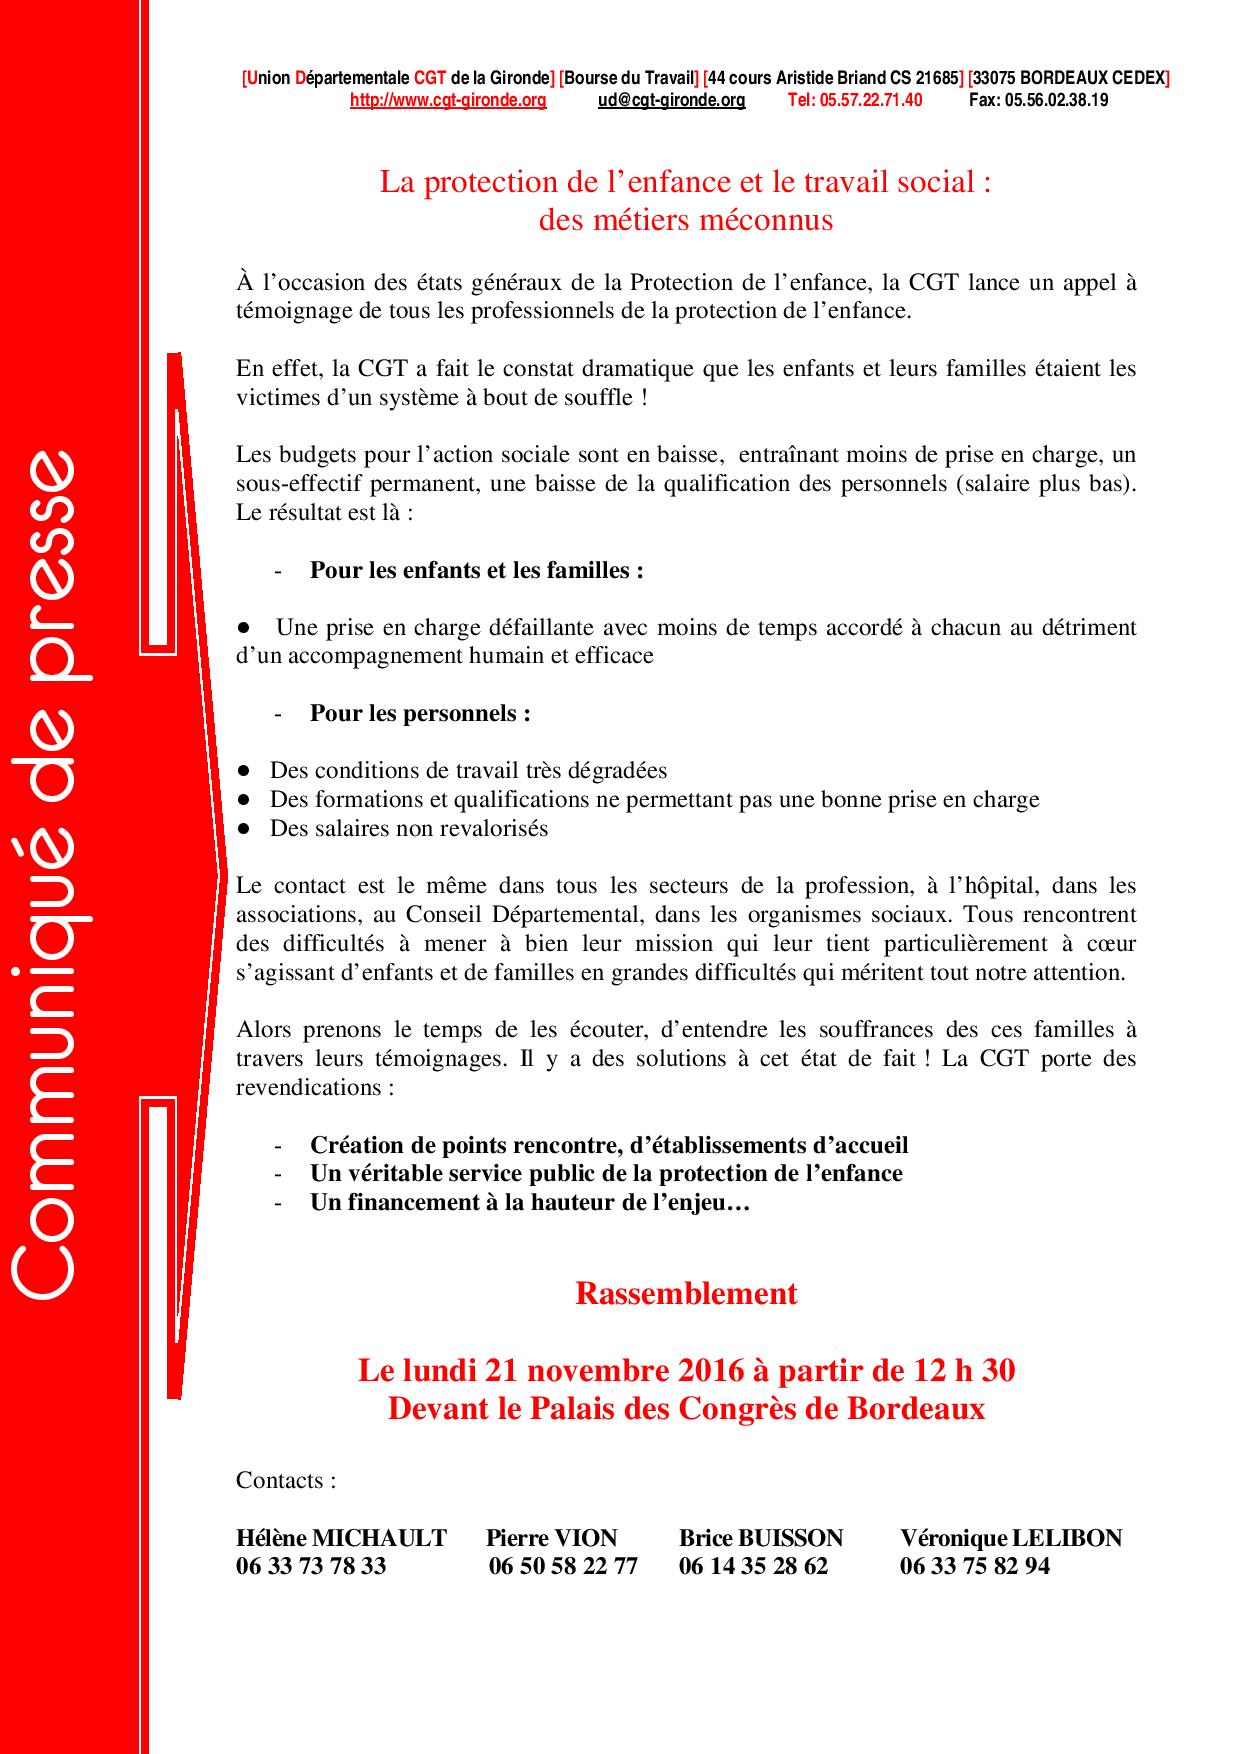 11-18-2016-etats-generaux-de-la-protection-de-l-enfance-page-001